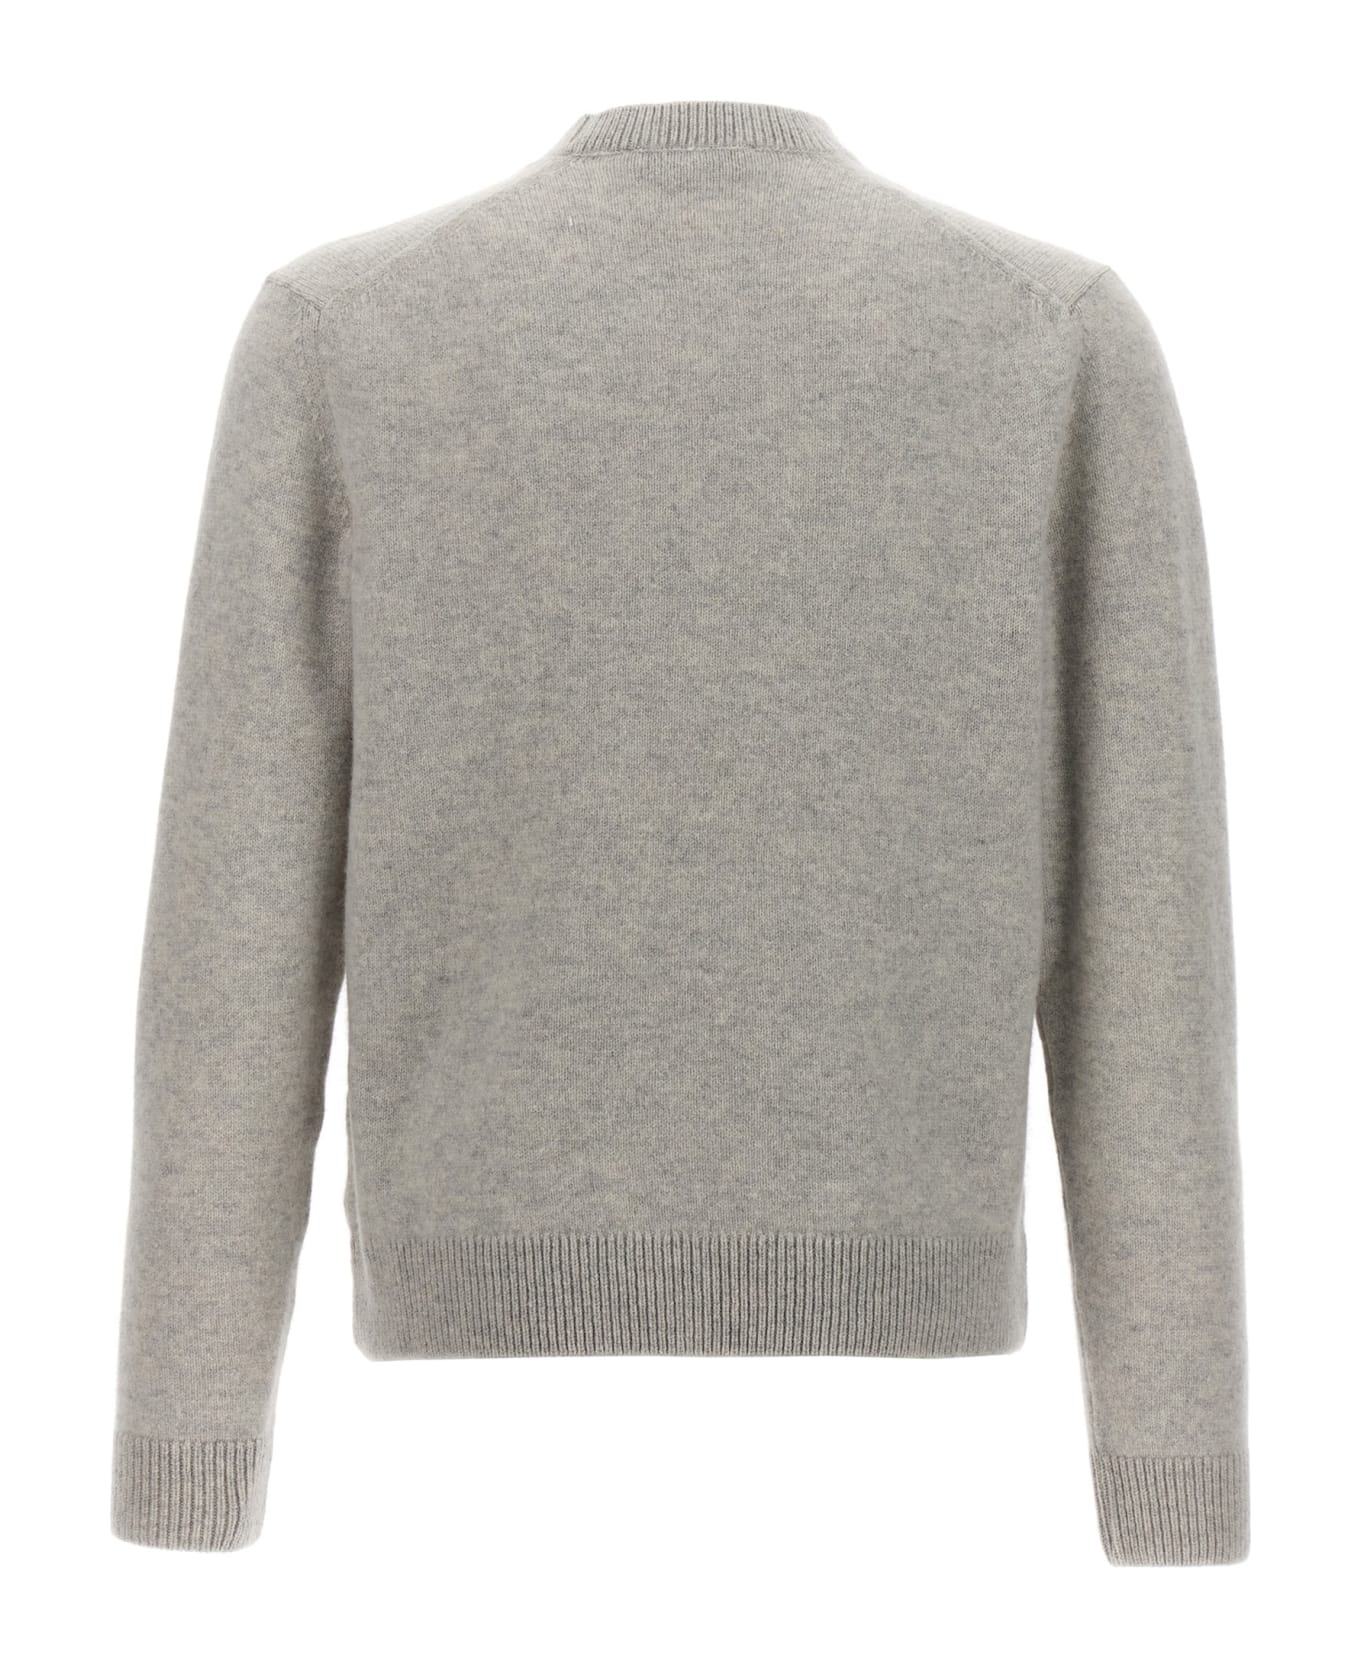 Maison Kitsuné 'baby Fox' Sweater - Light Grey Melange ニットウェア